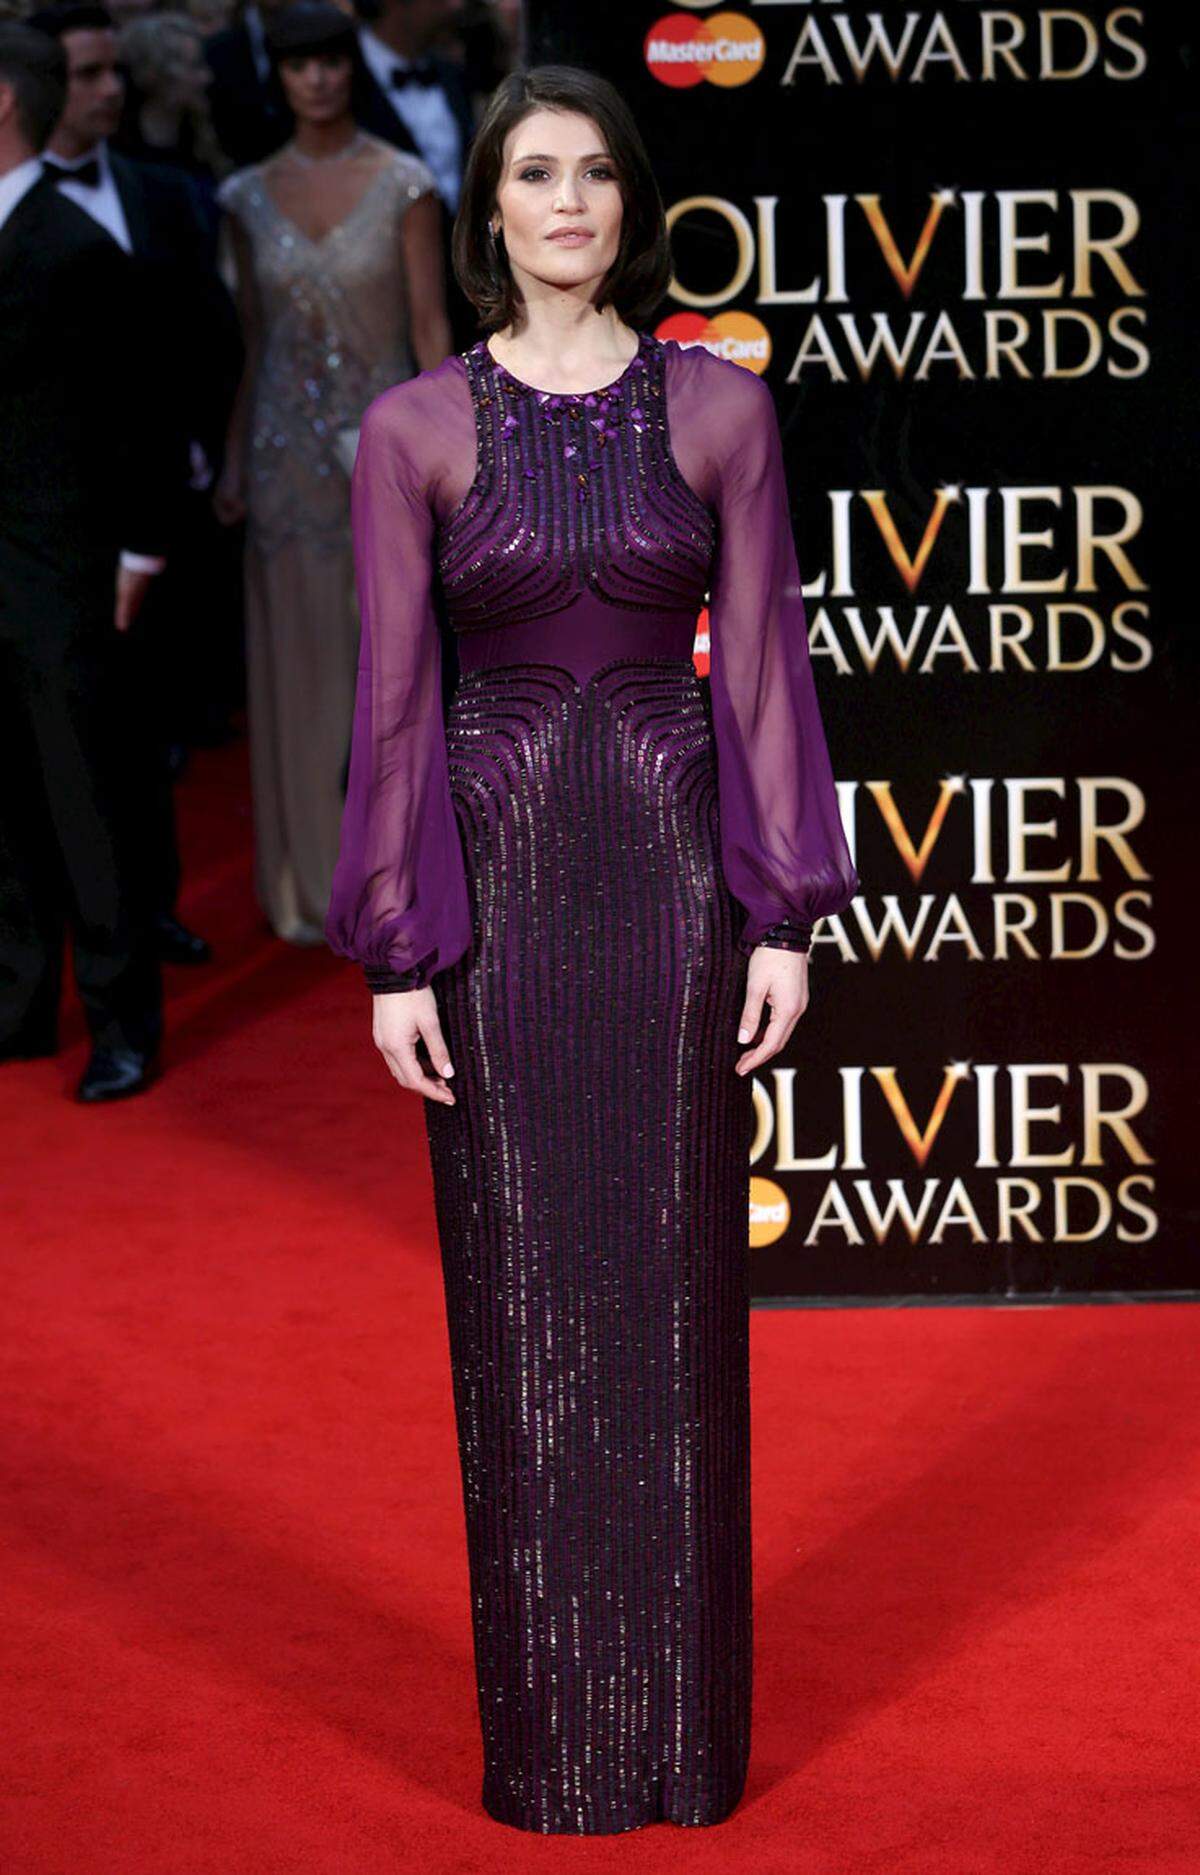 Schauspielerin Gemma Arterton funkelte auf dem roten Teppich den Fotografen in einer Robe von Jenny Packham entgegen.